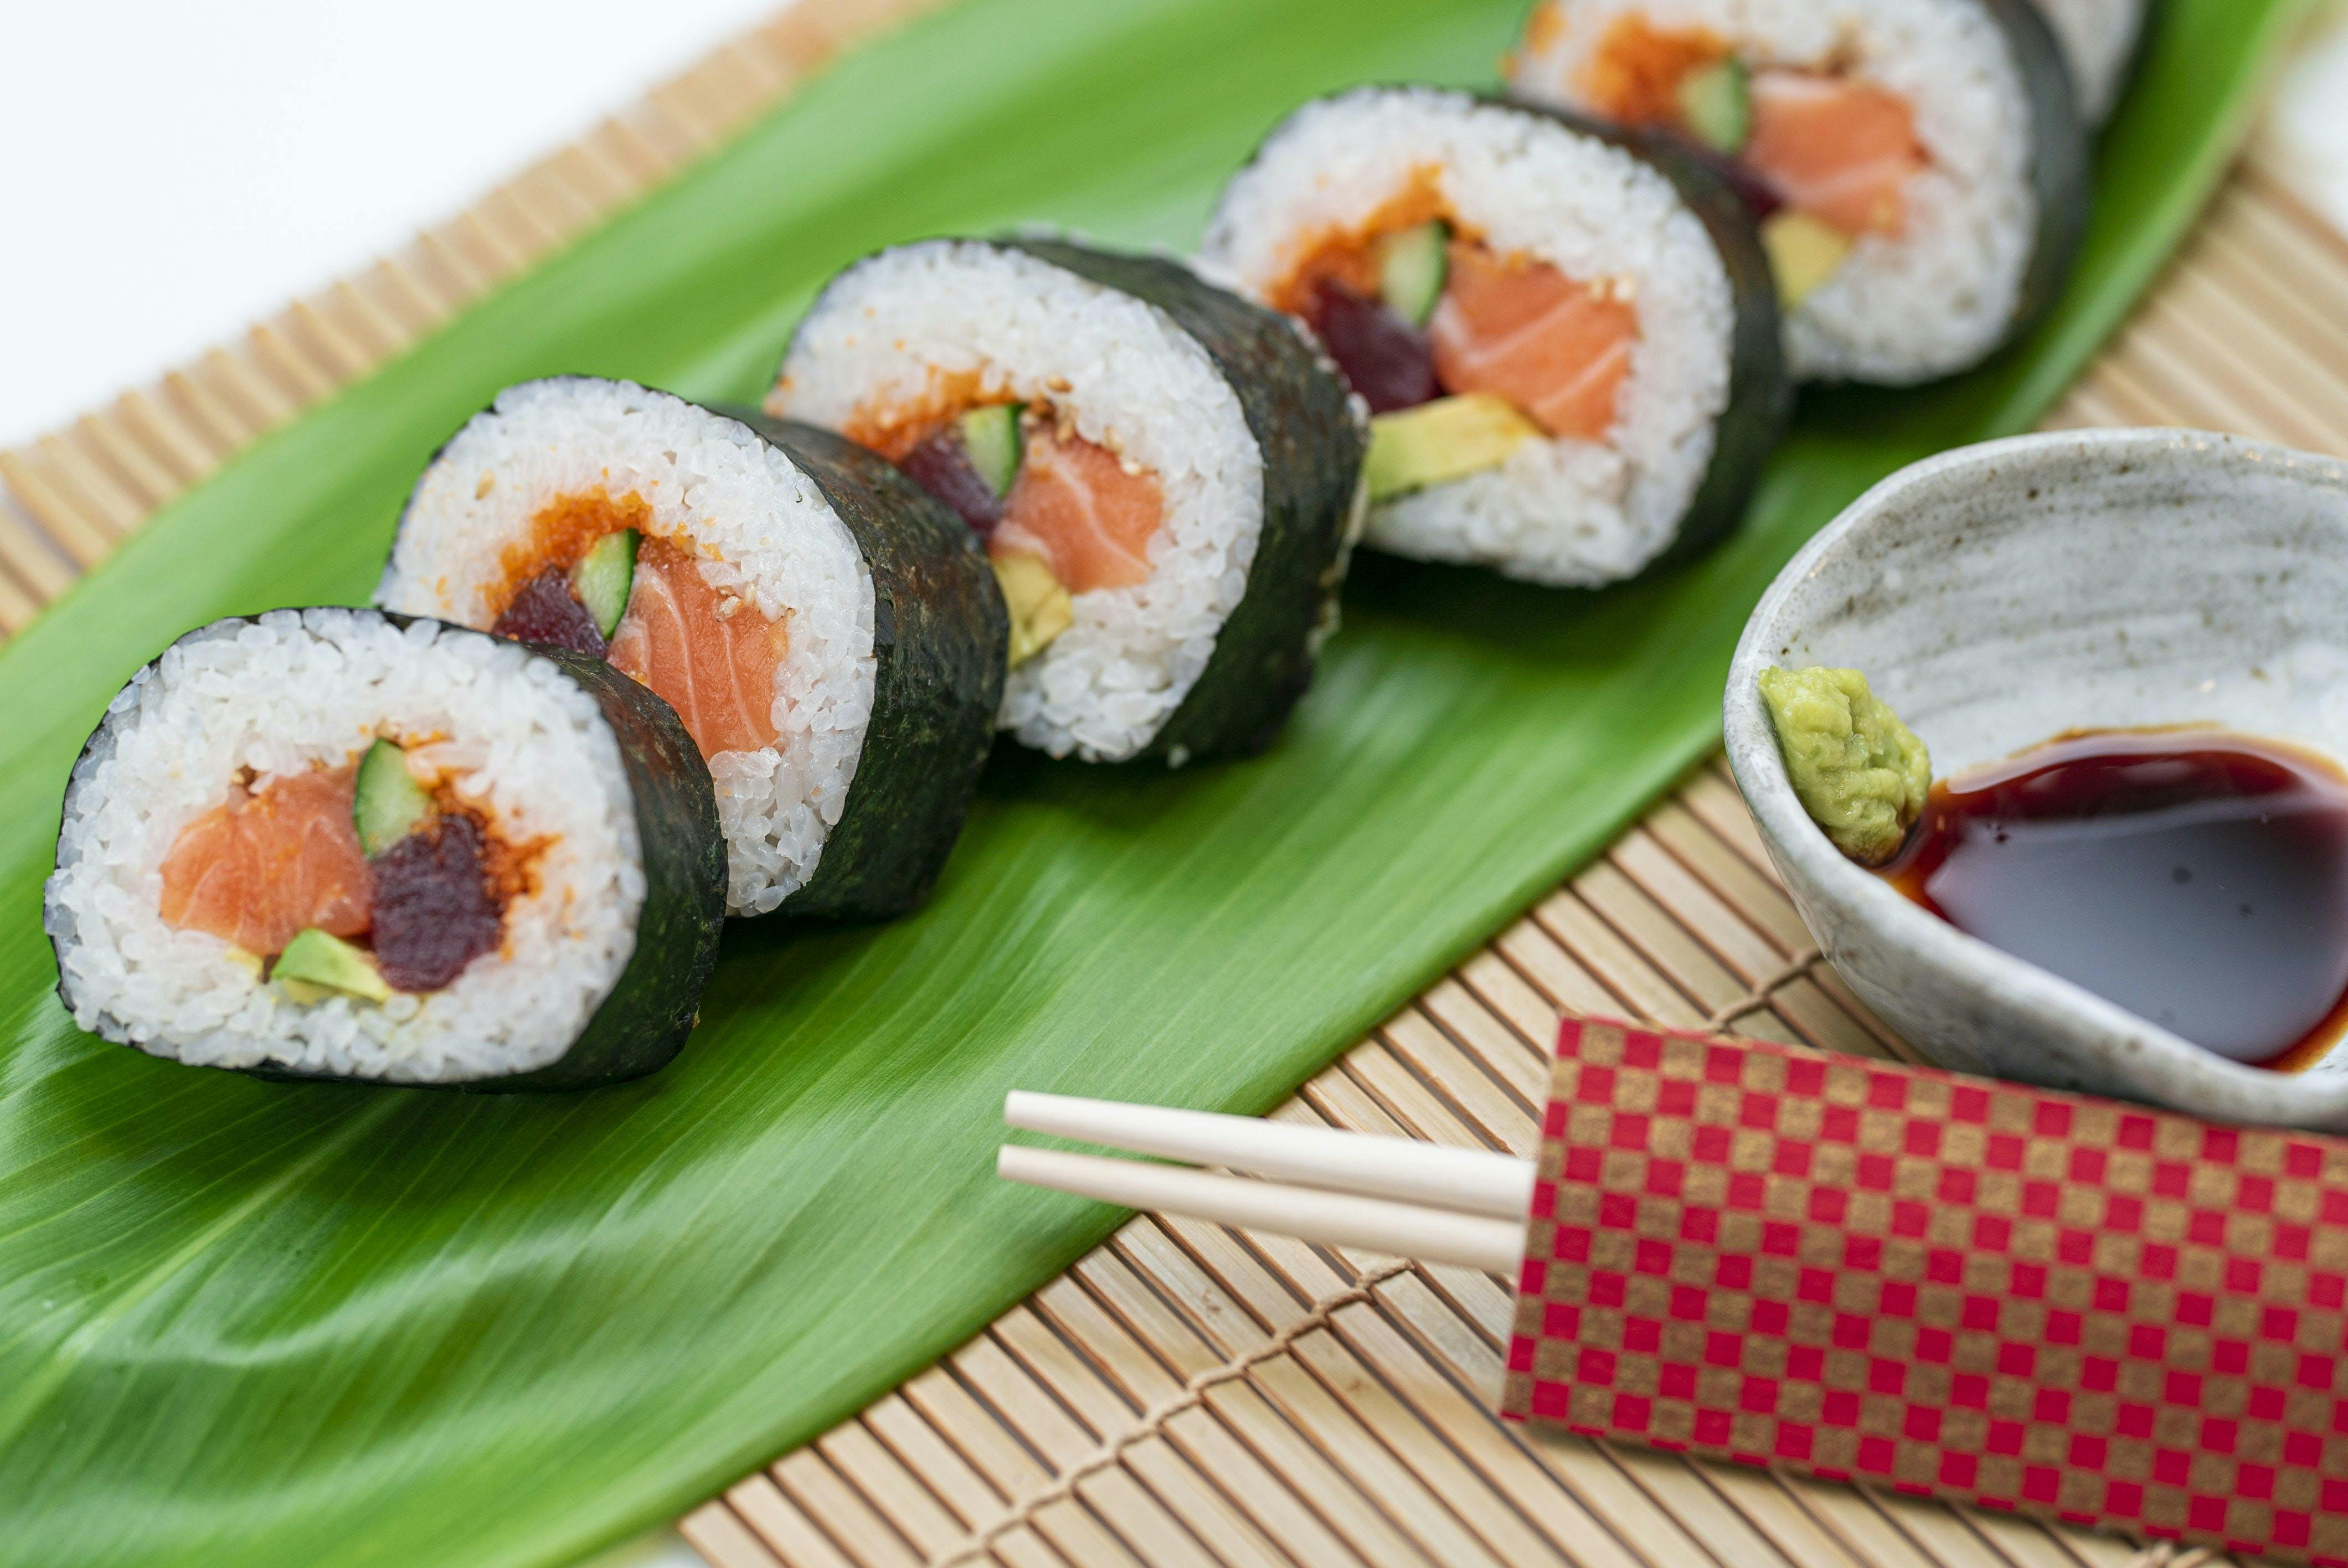 Honolulu Fish Co. Nigiri & Maki Roll Home Sushi Kit